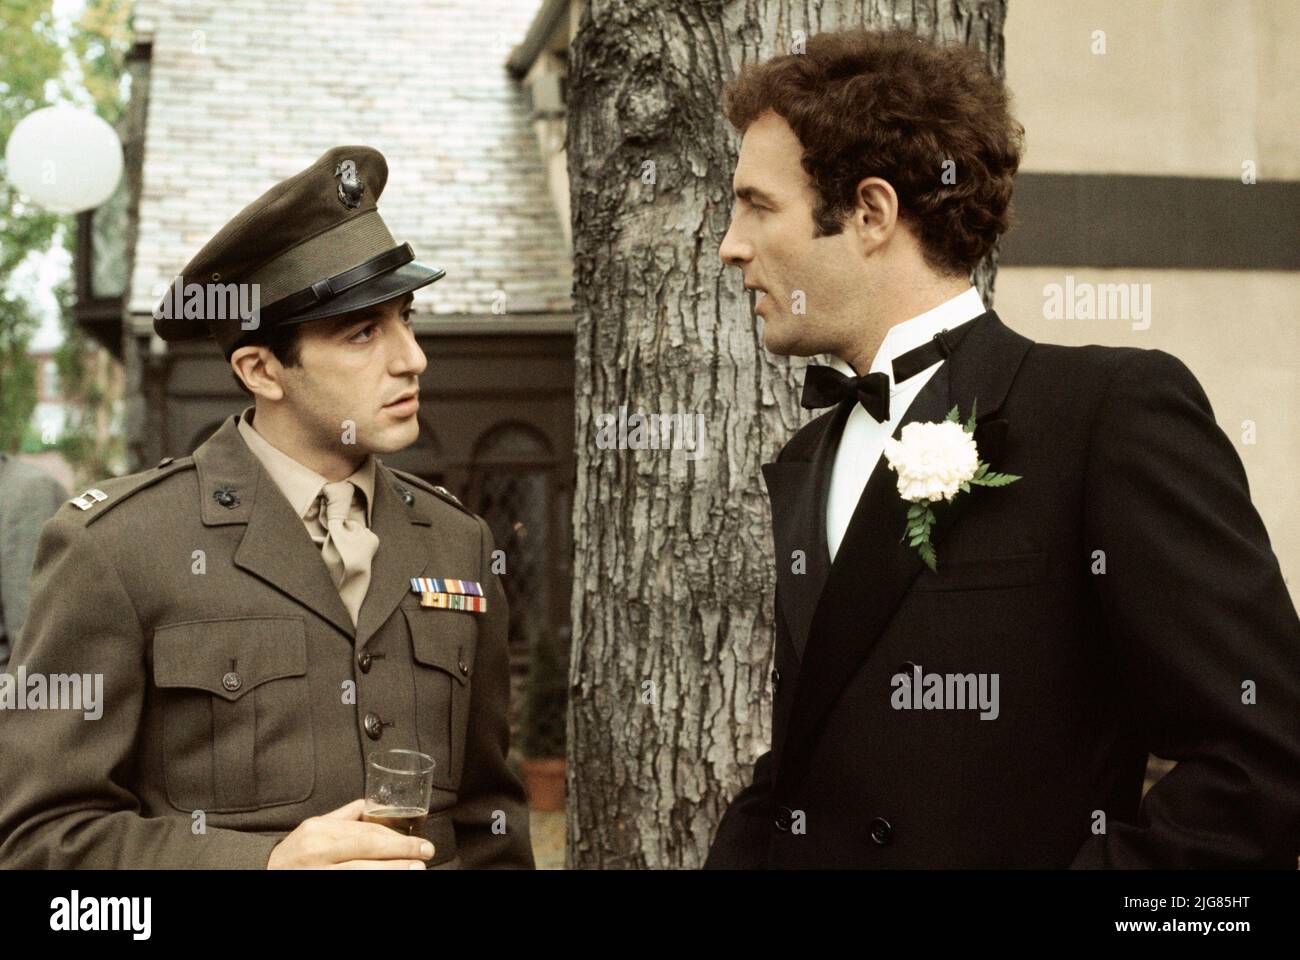 Al Pacino et James Caan le parrain (1972) *FilmSTILL - usage éditorial seulement* voir instructions spéciales. Crédit CAP/SFS : FS/Capital/MediaPunch Banque D'Images